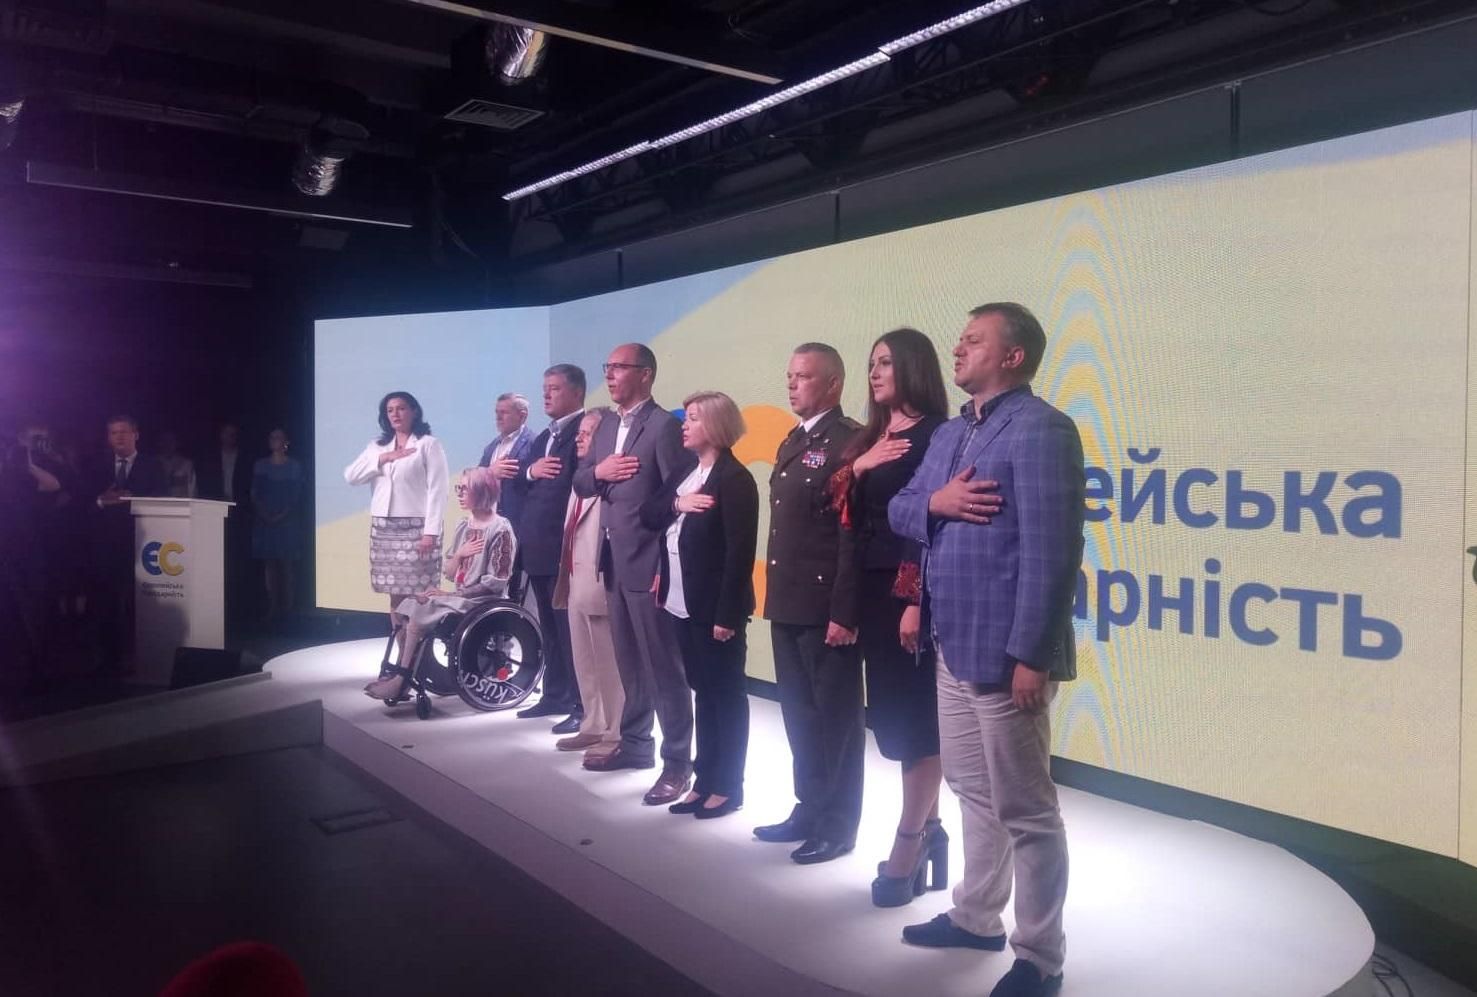 Партия Солидарность Петра Порошенко - список кандидатов на парламентские выборы в Украине 2019